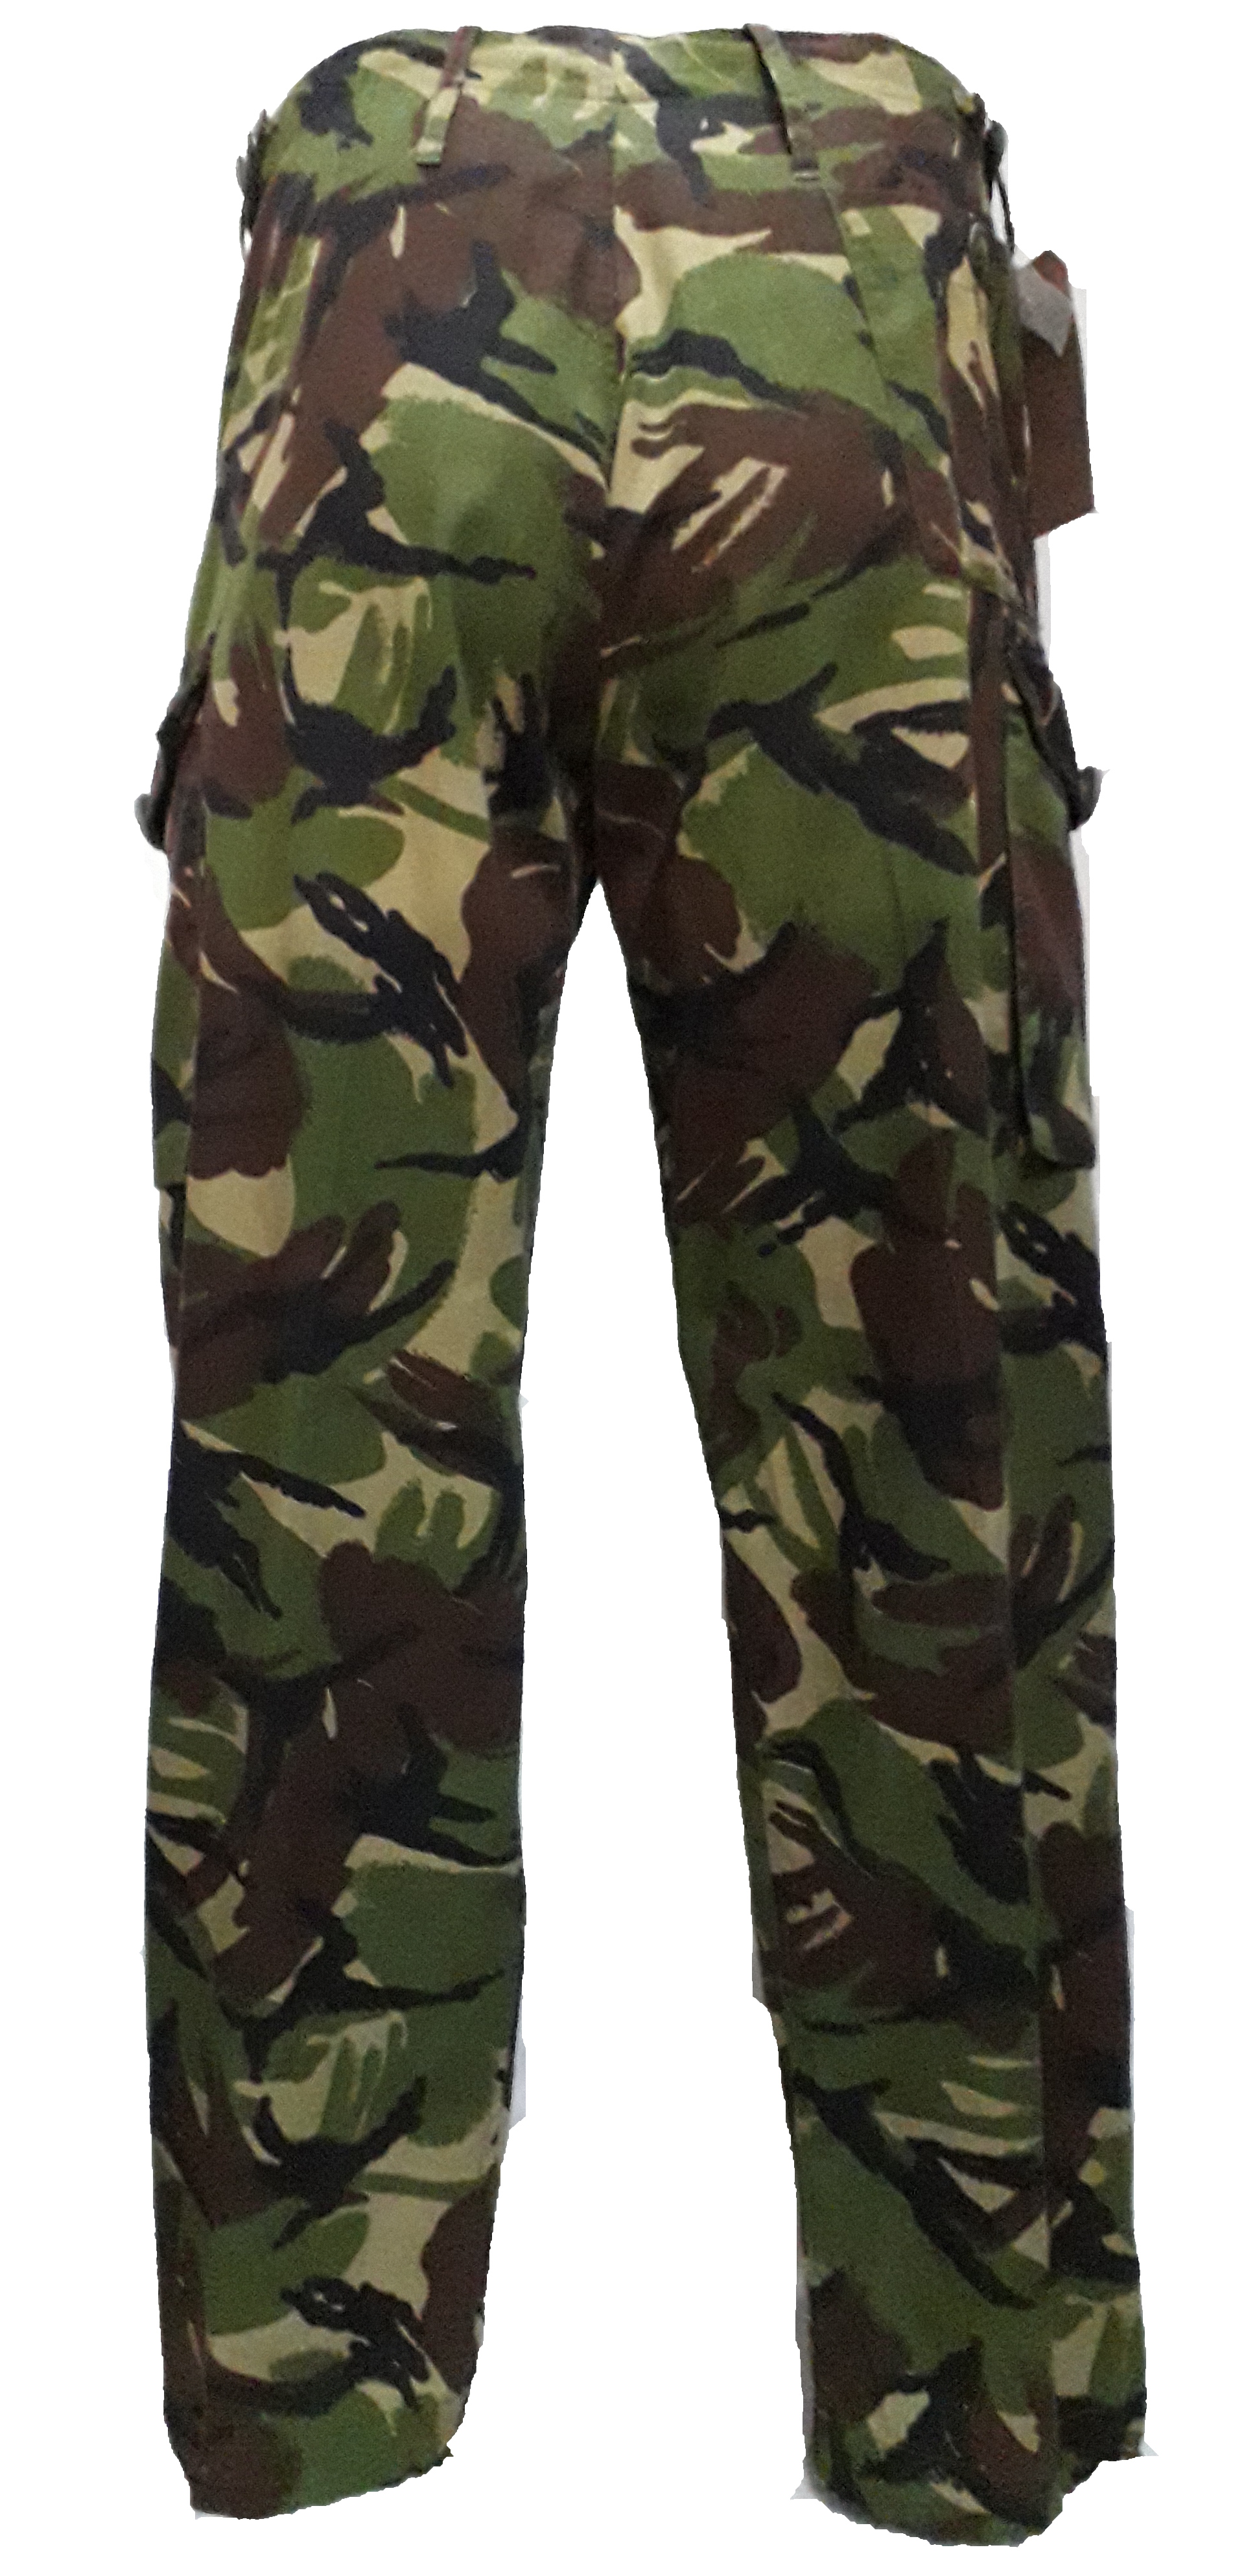 Soldier 95 Woodland DPM Combat Trousers - charliekeenan.com